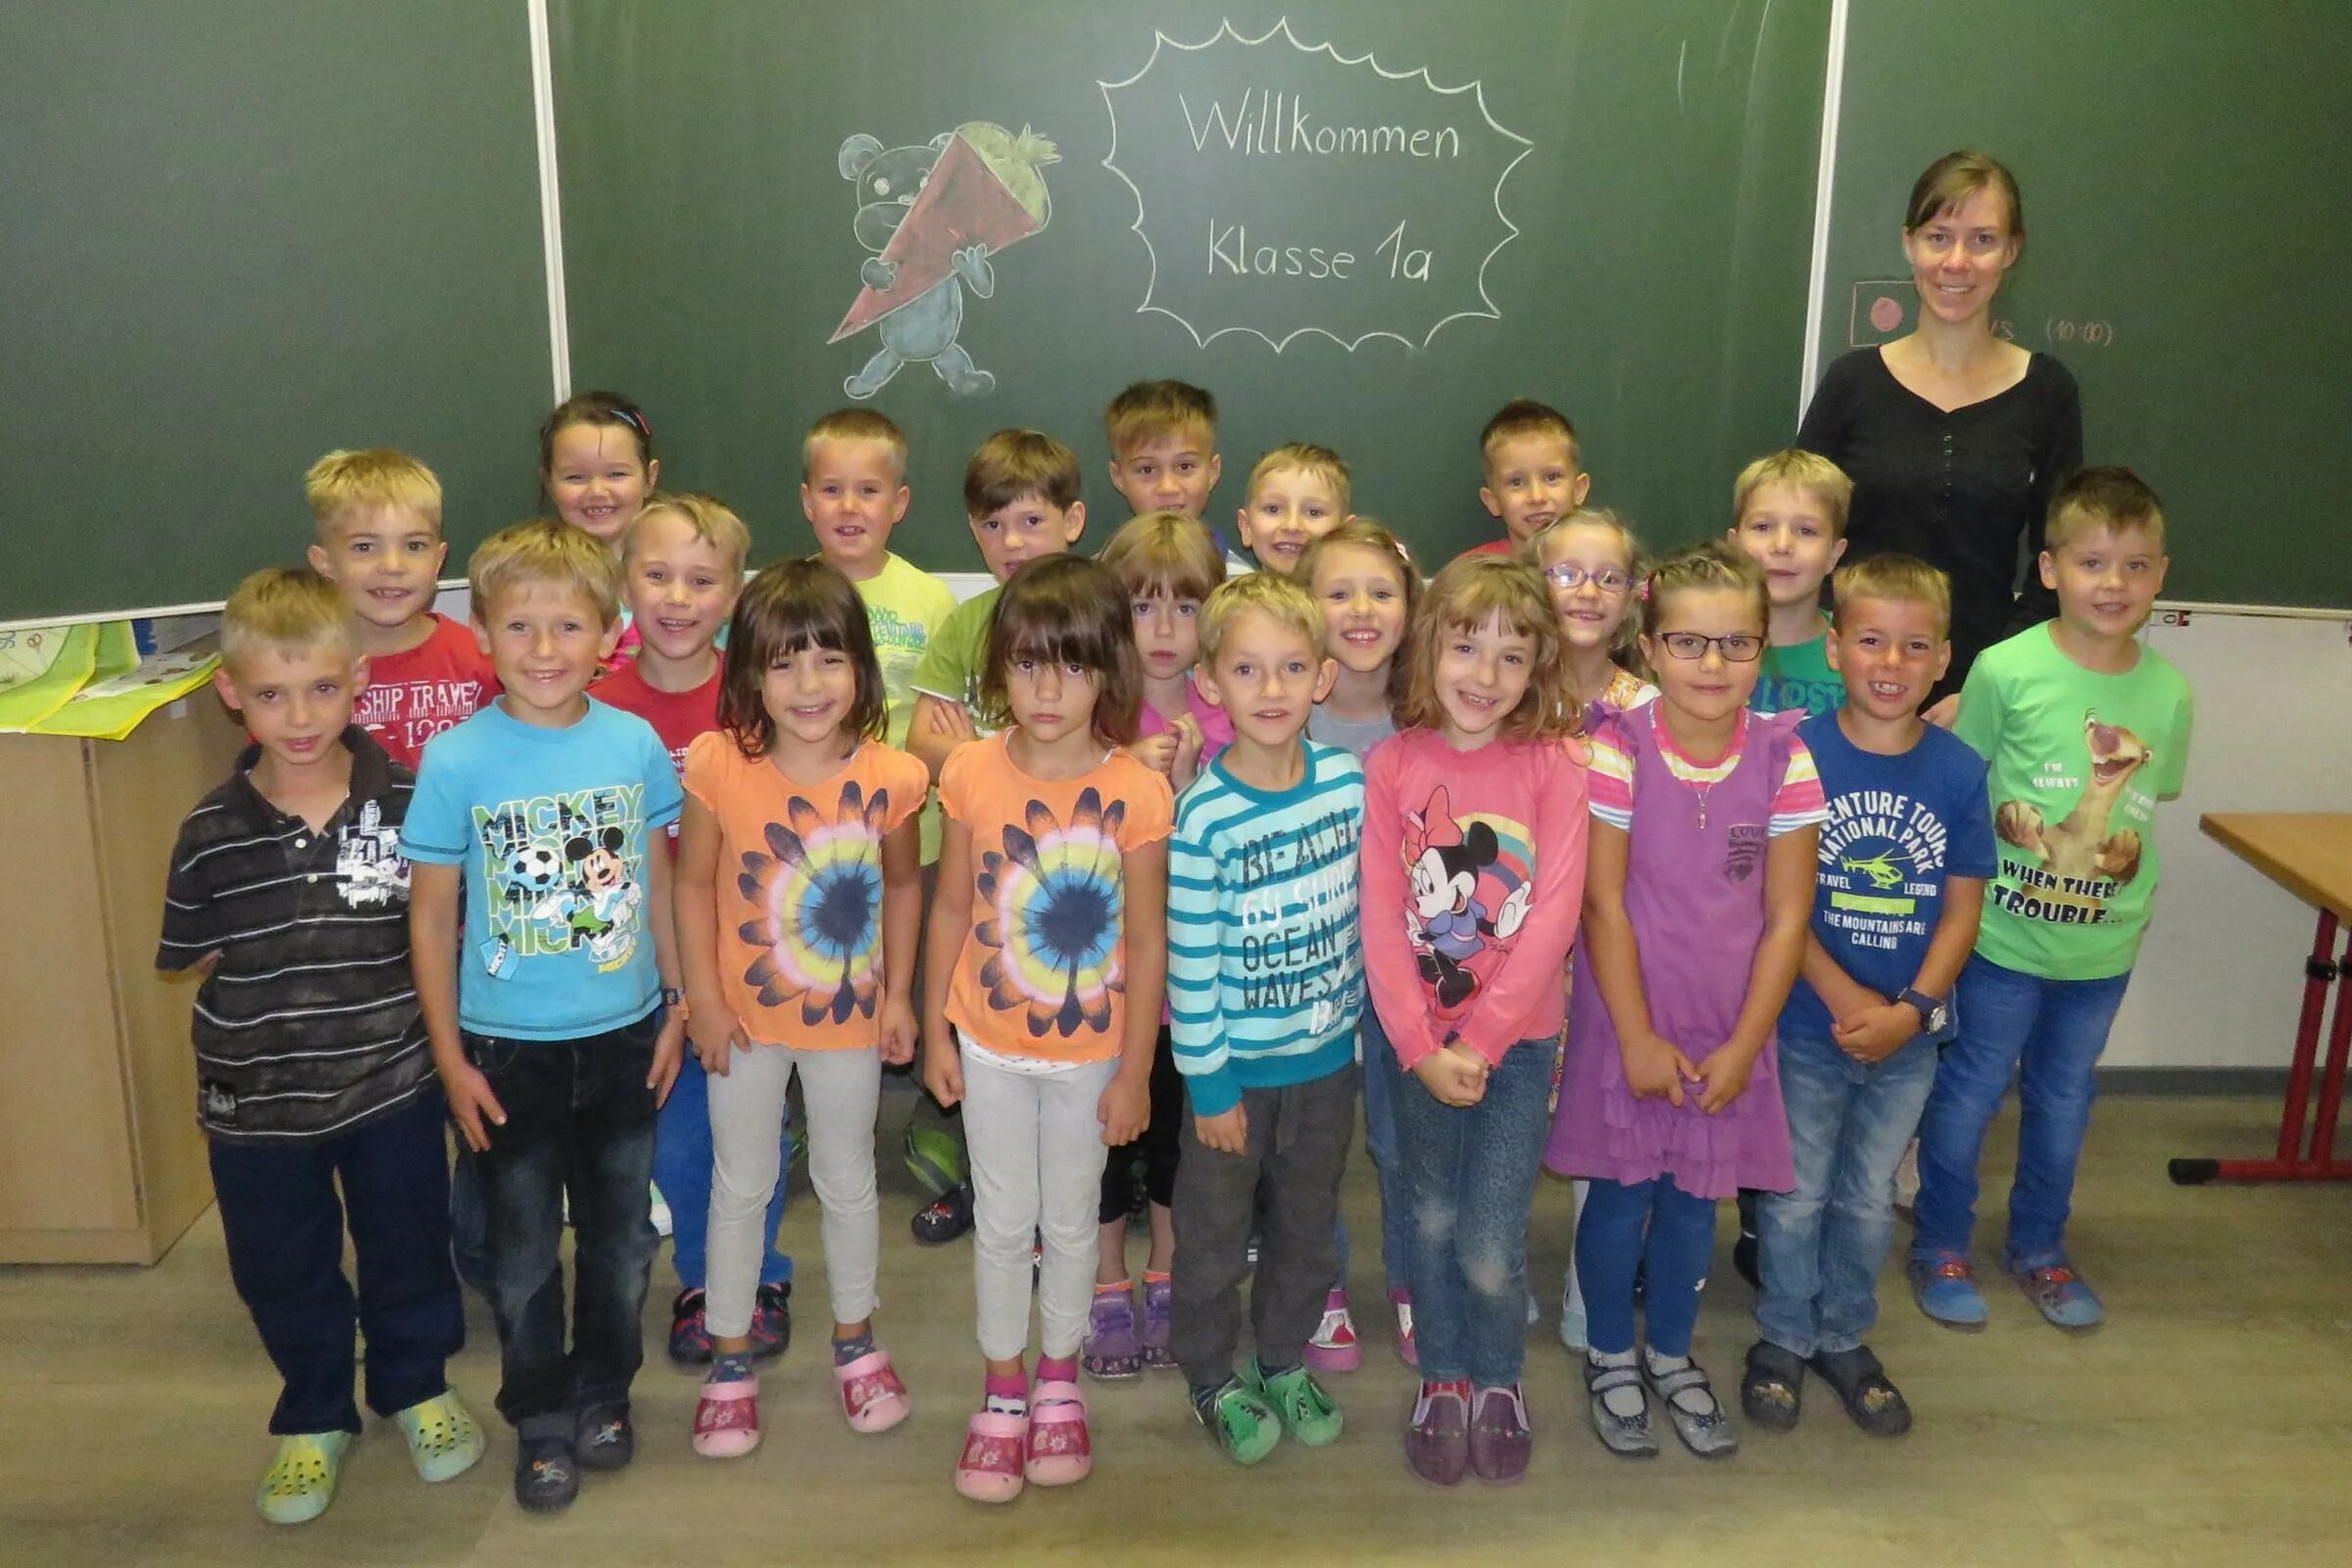 Жили были в первом классе. Начальная школа в Германии Grundschule. Школа в Германия груншули начальная школа 61. Второгодник в первом классе. Klasse b1.1.